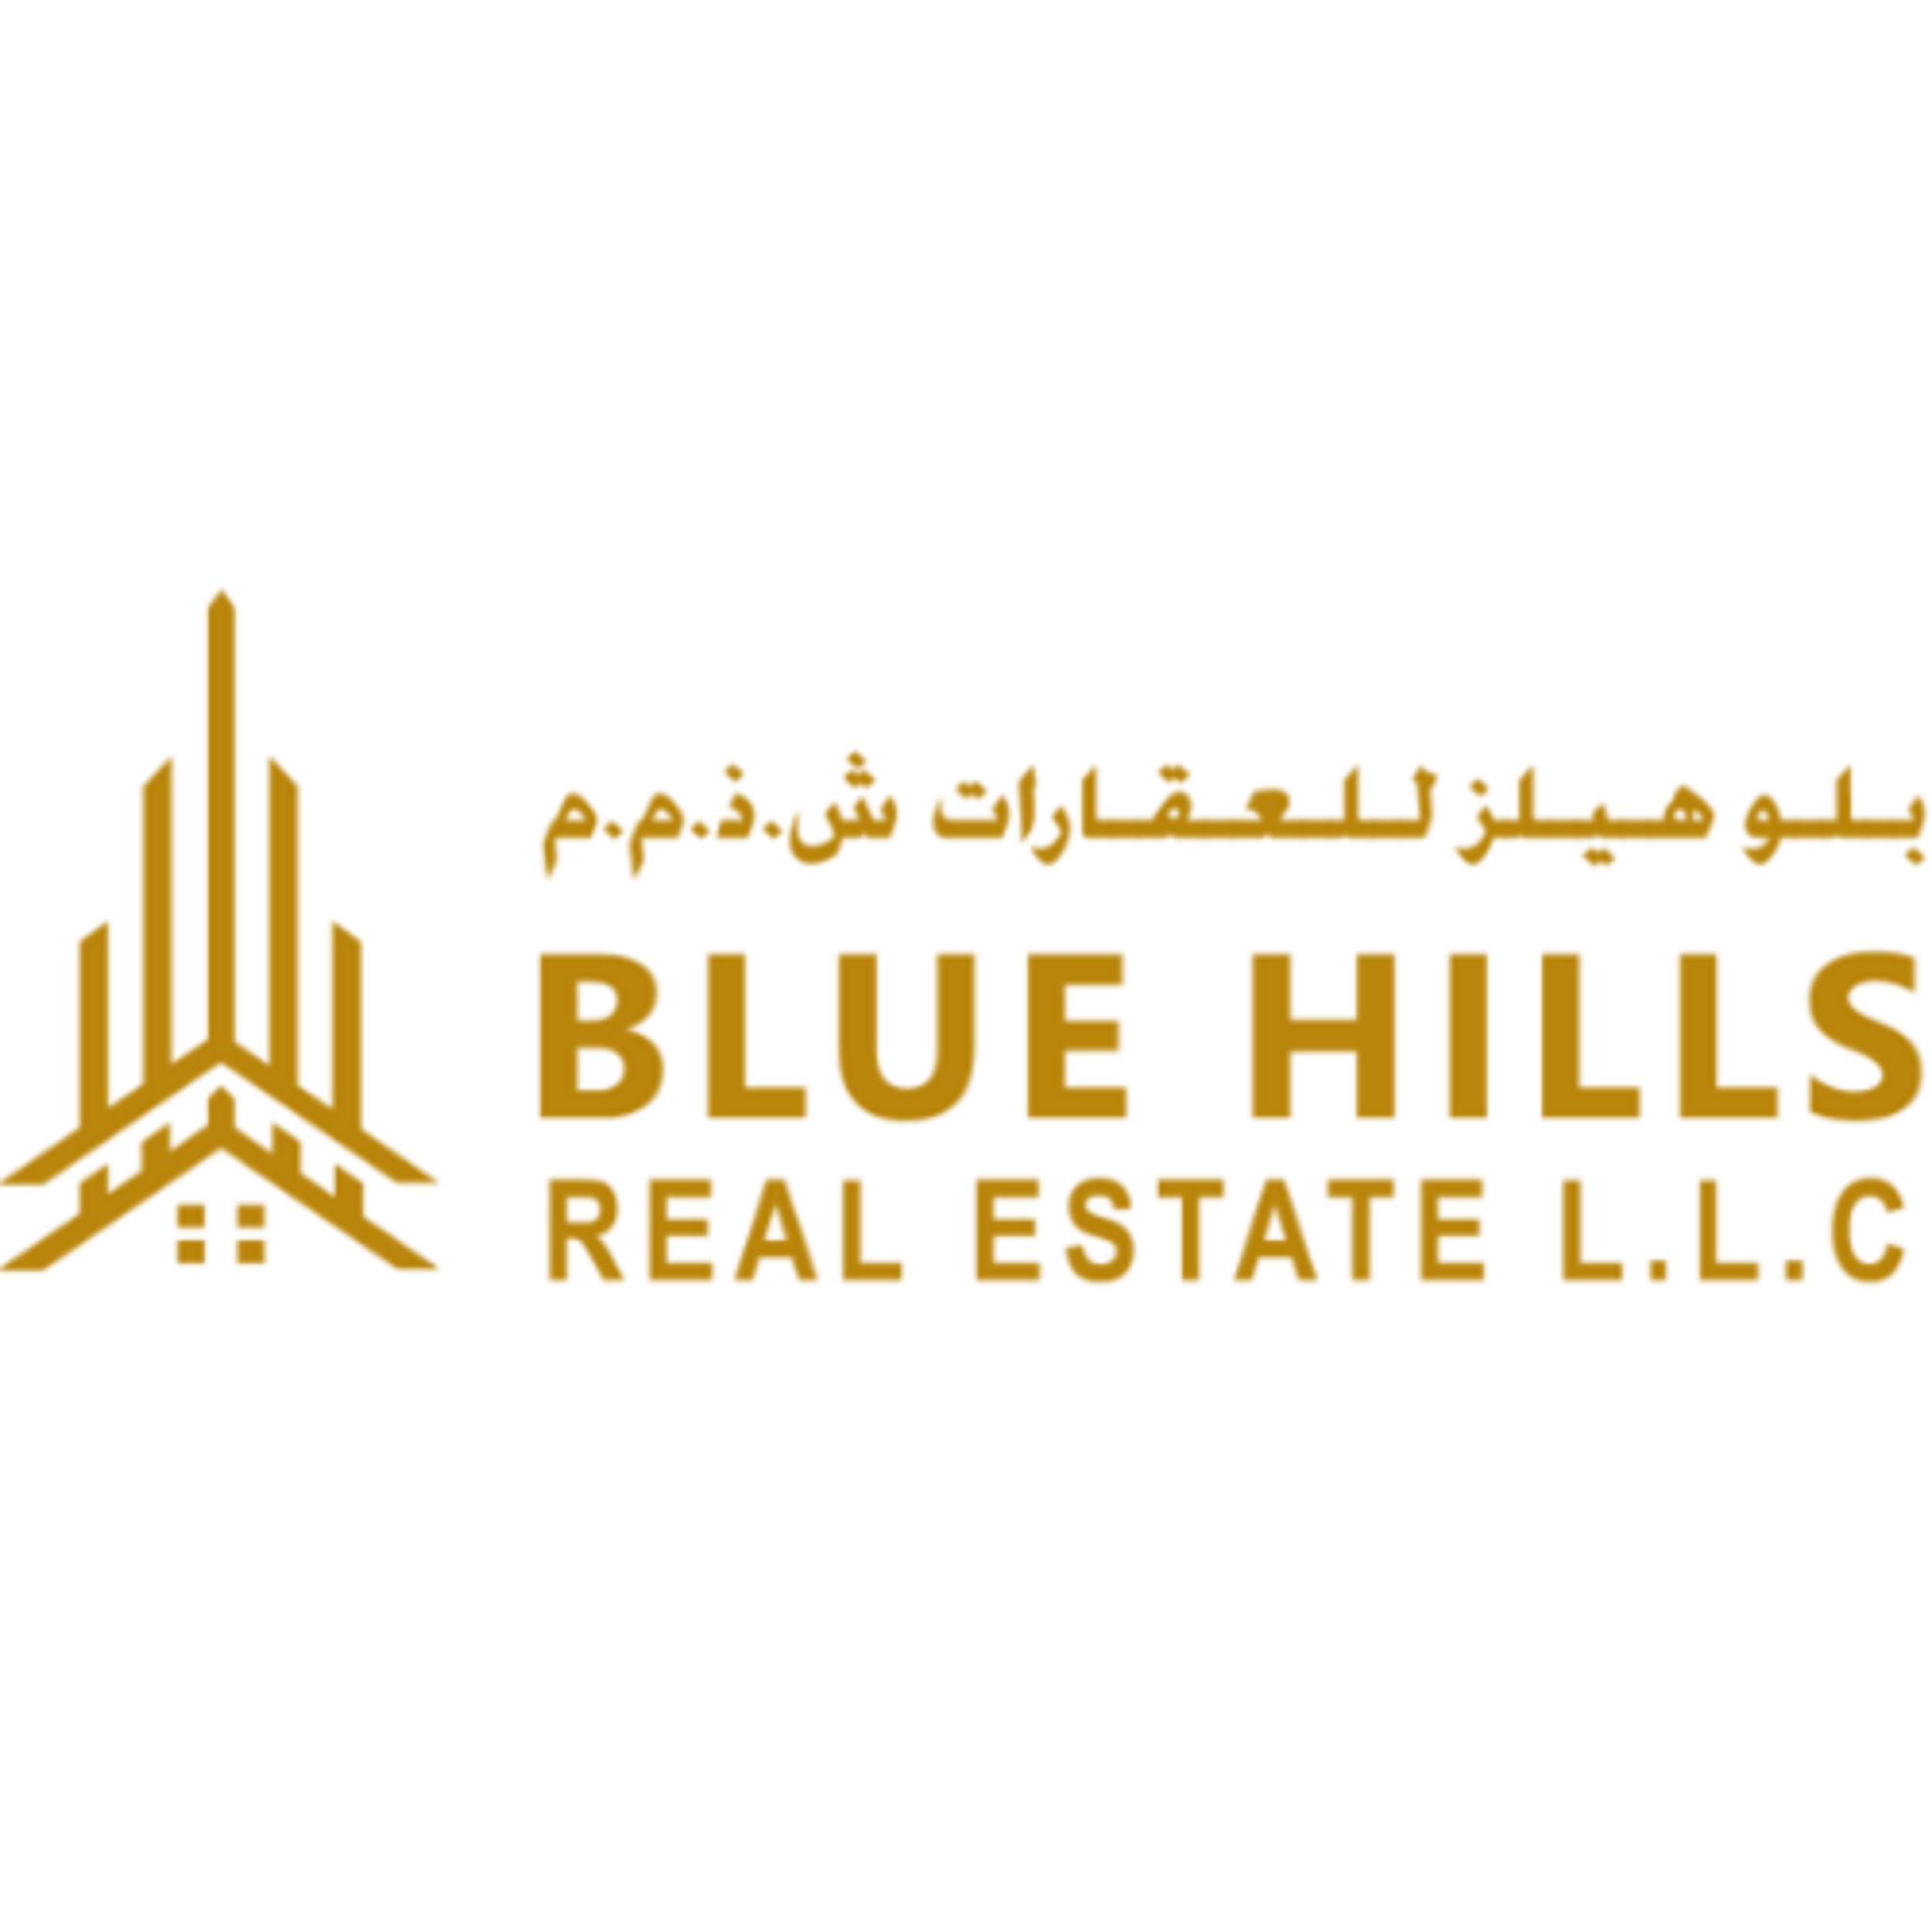 Blue Hills Real Estate